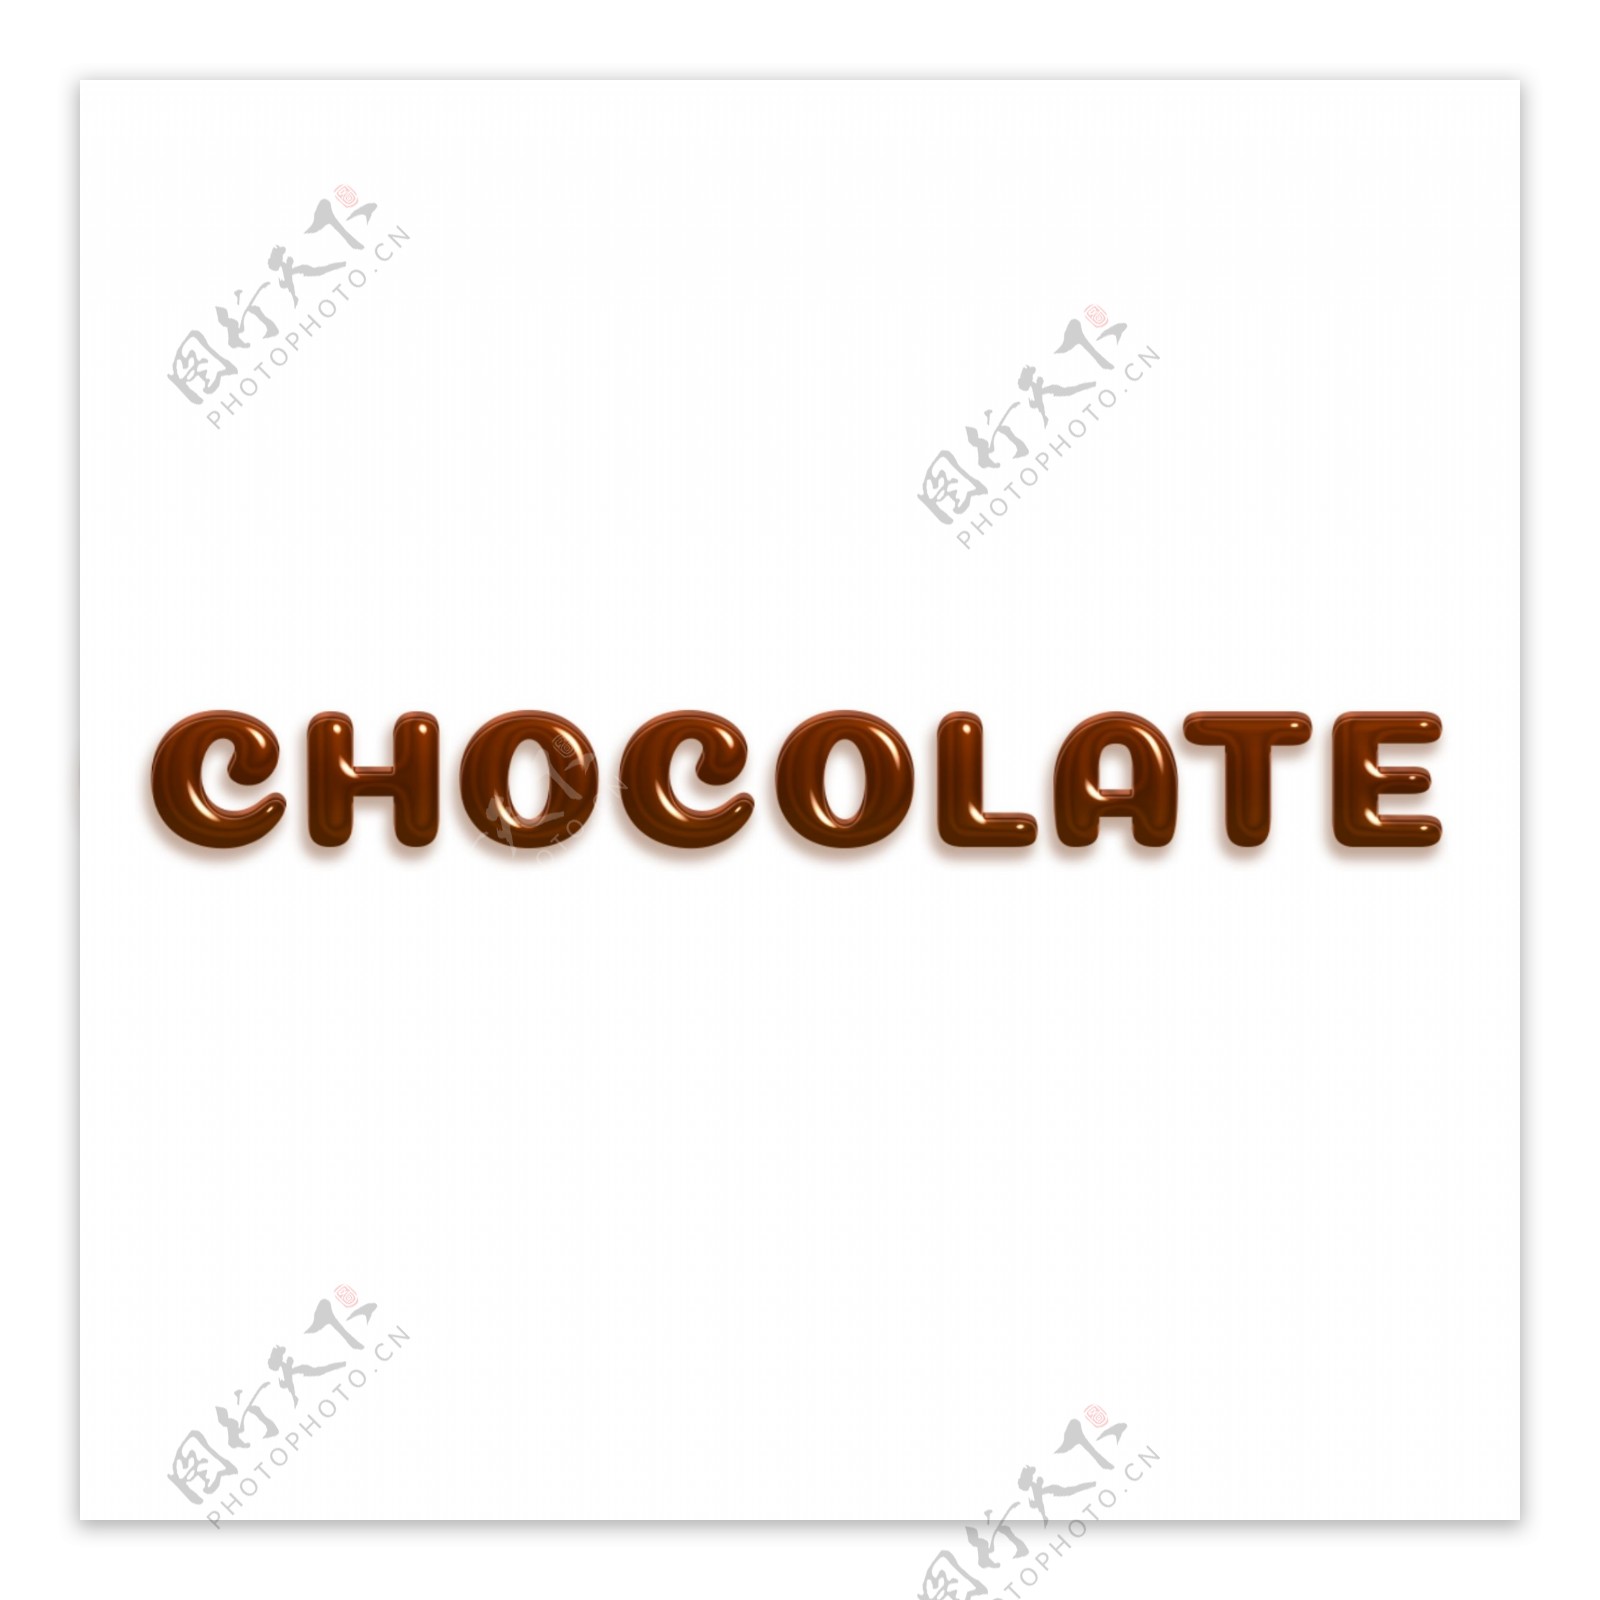 容量光滑的棕色题字巧克力